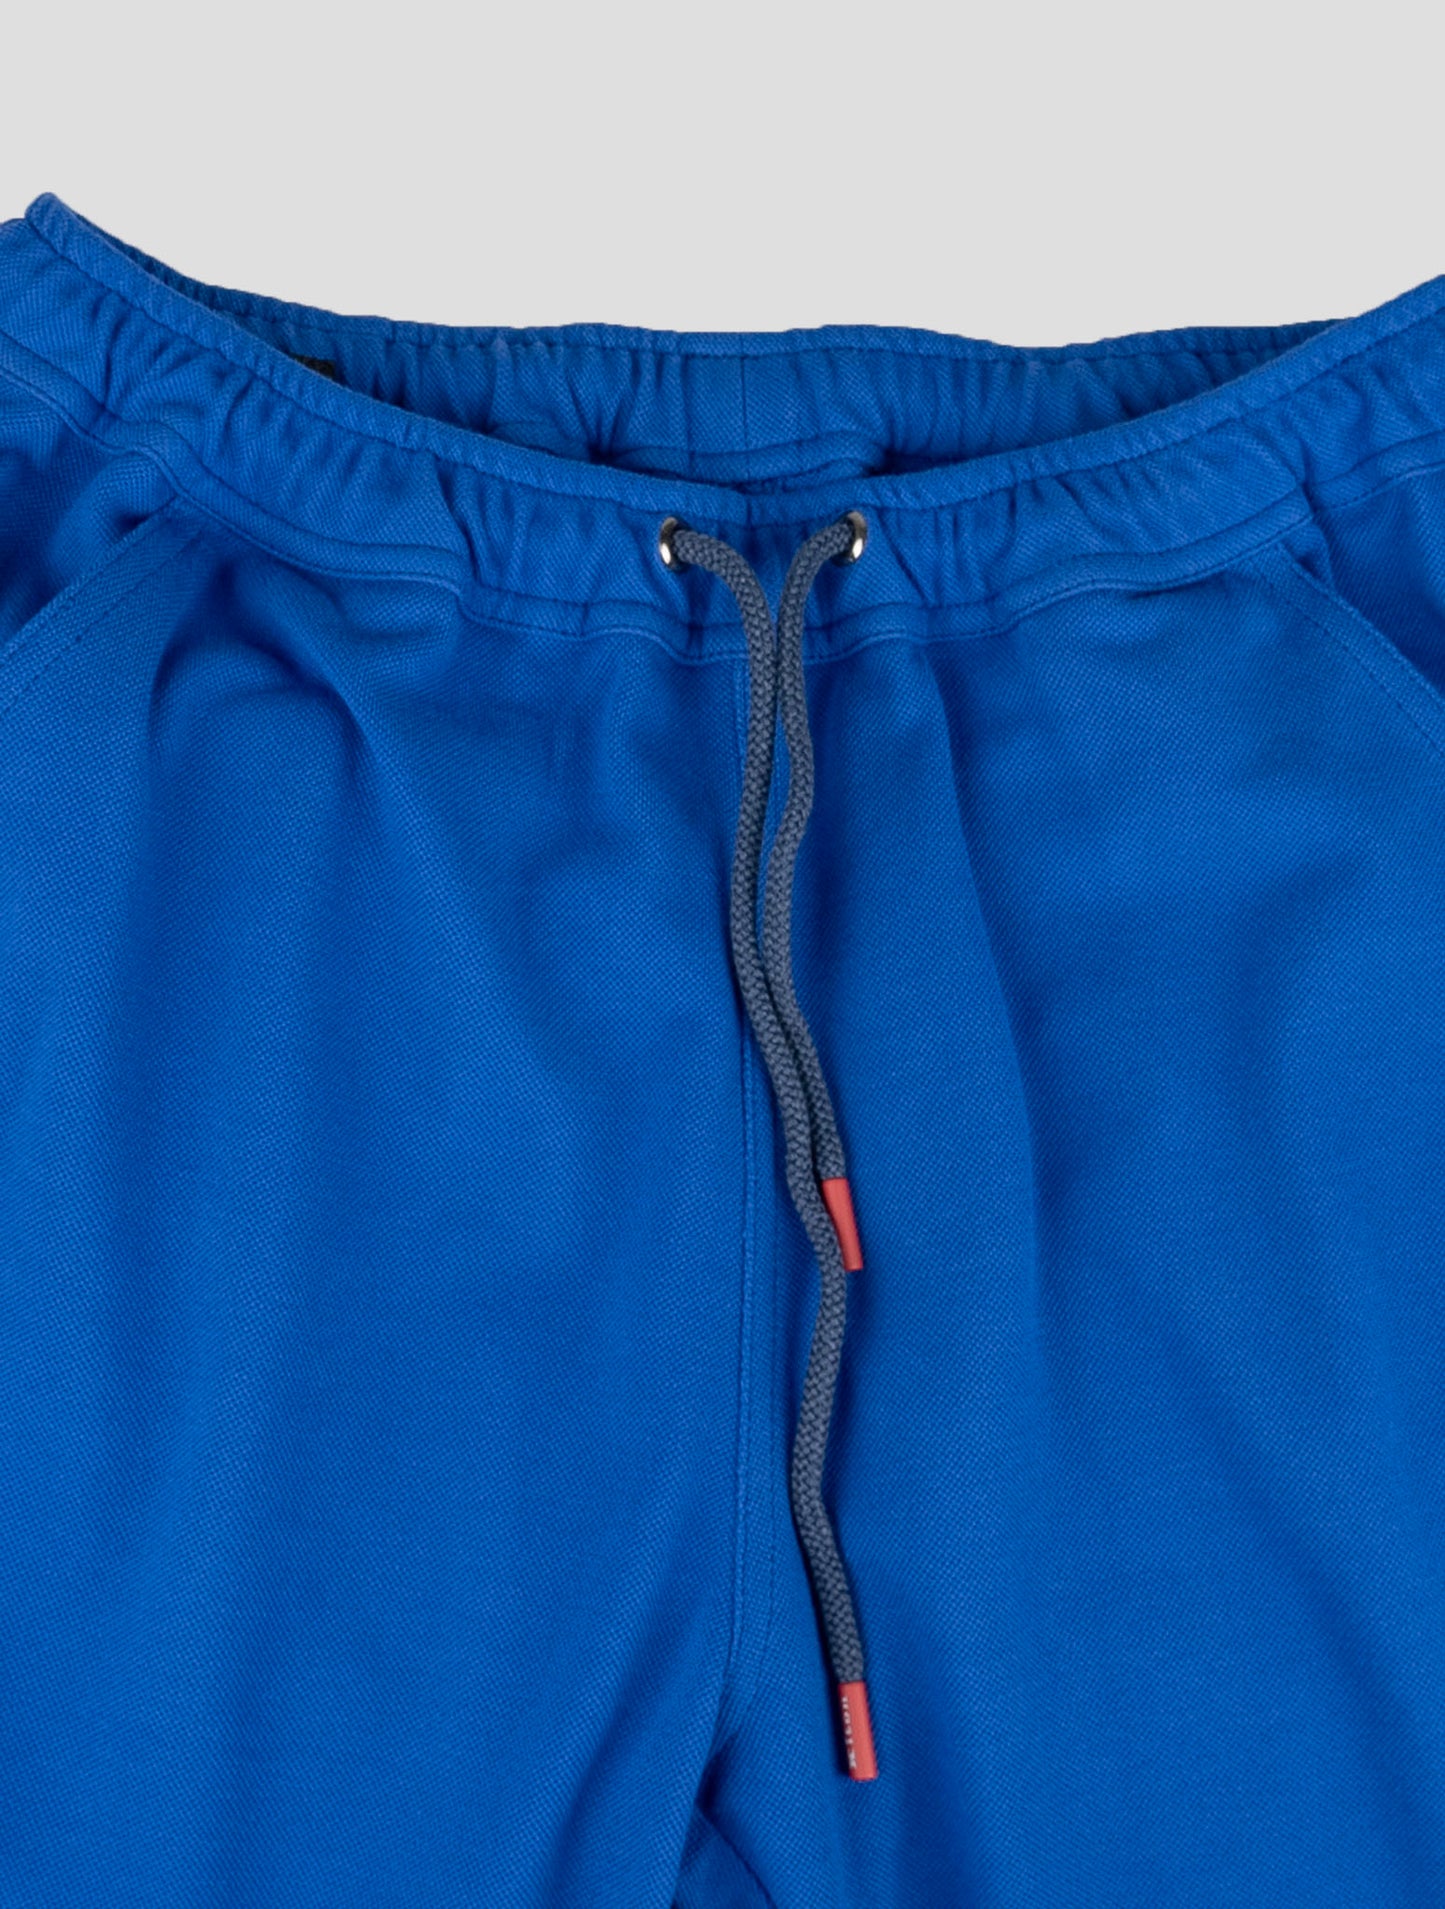 Traje a juego Kiton-Gris Mariano y azul pantalones cortos chándal